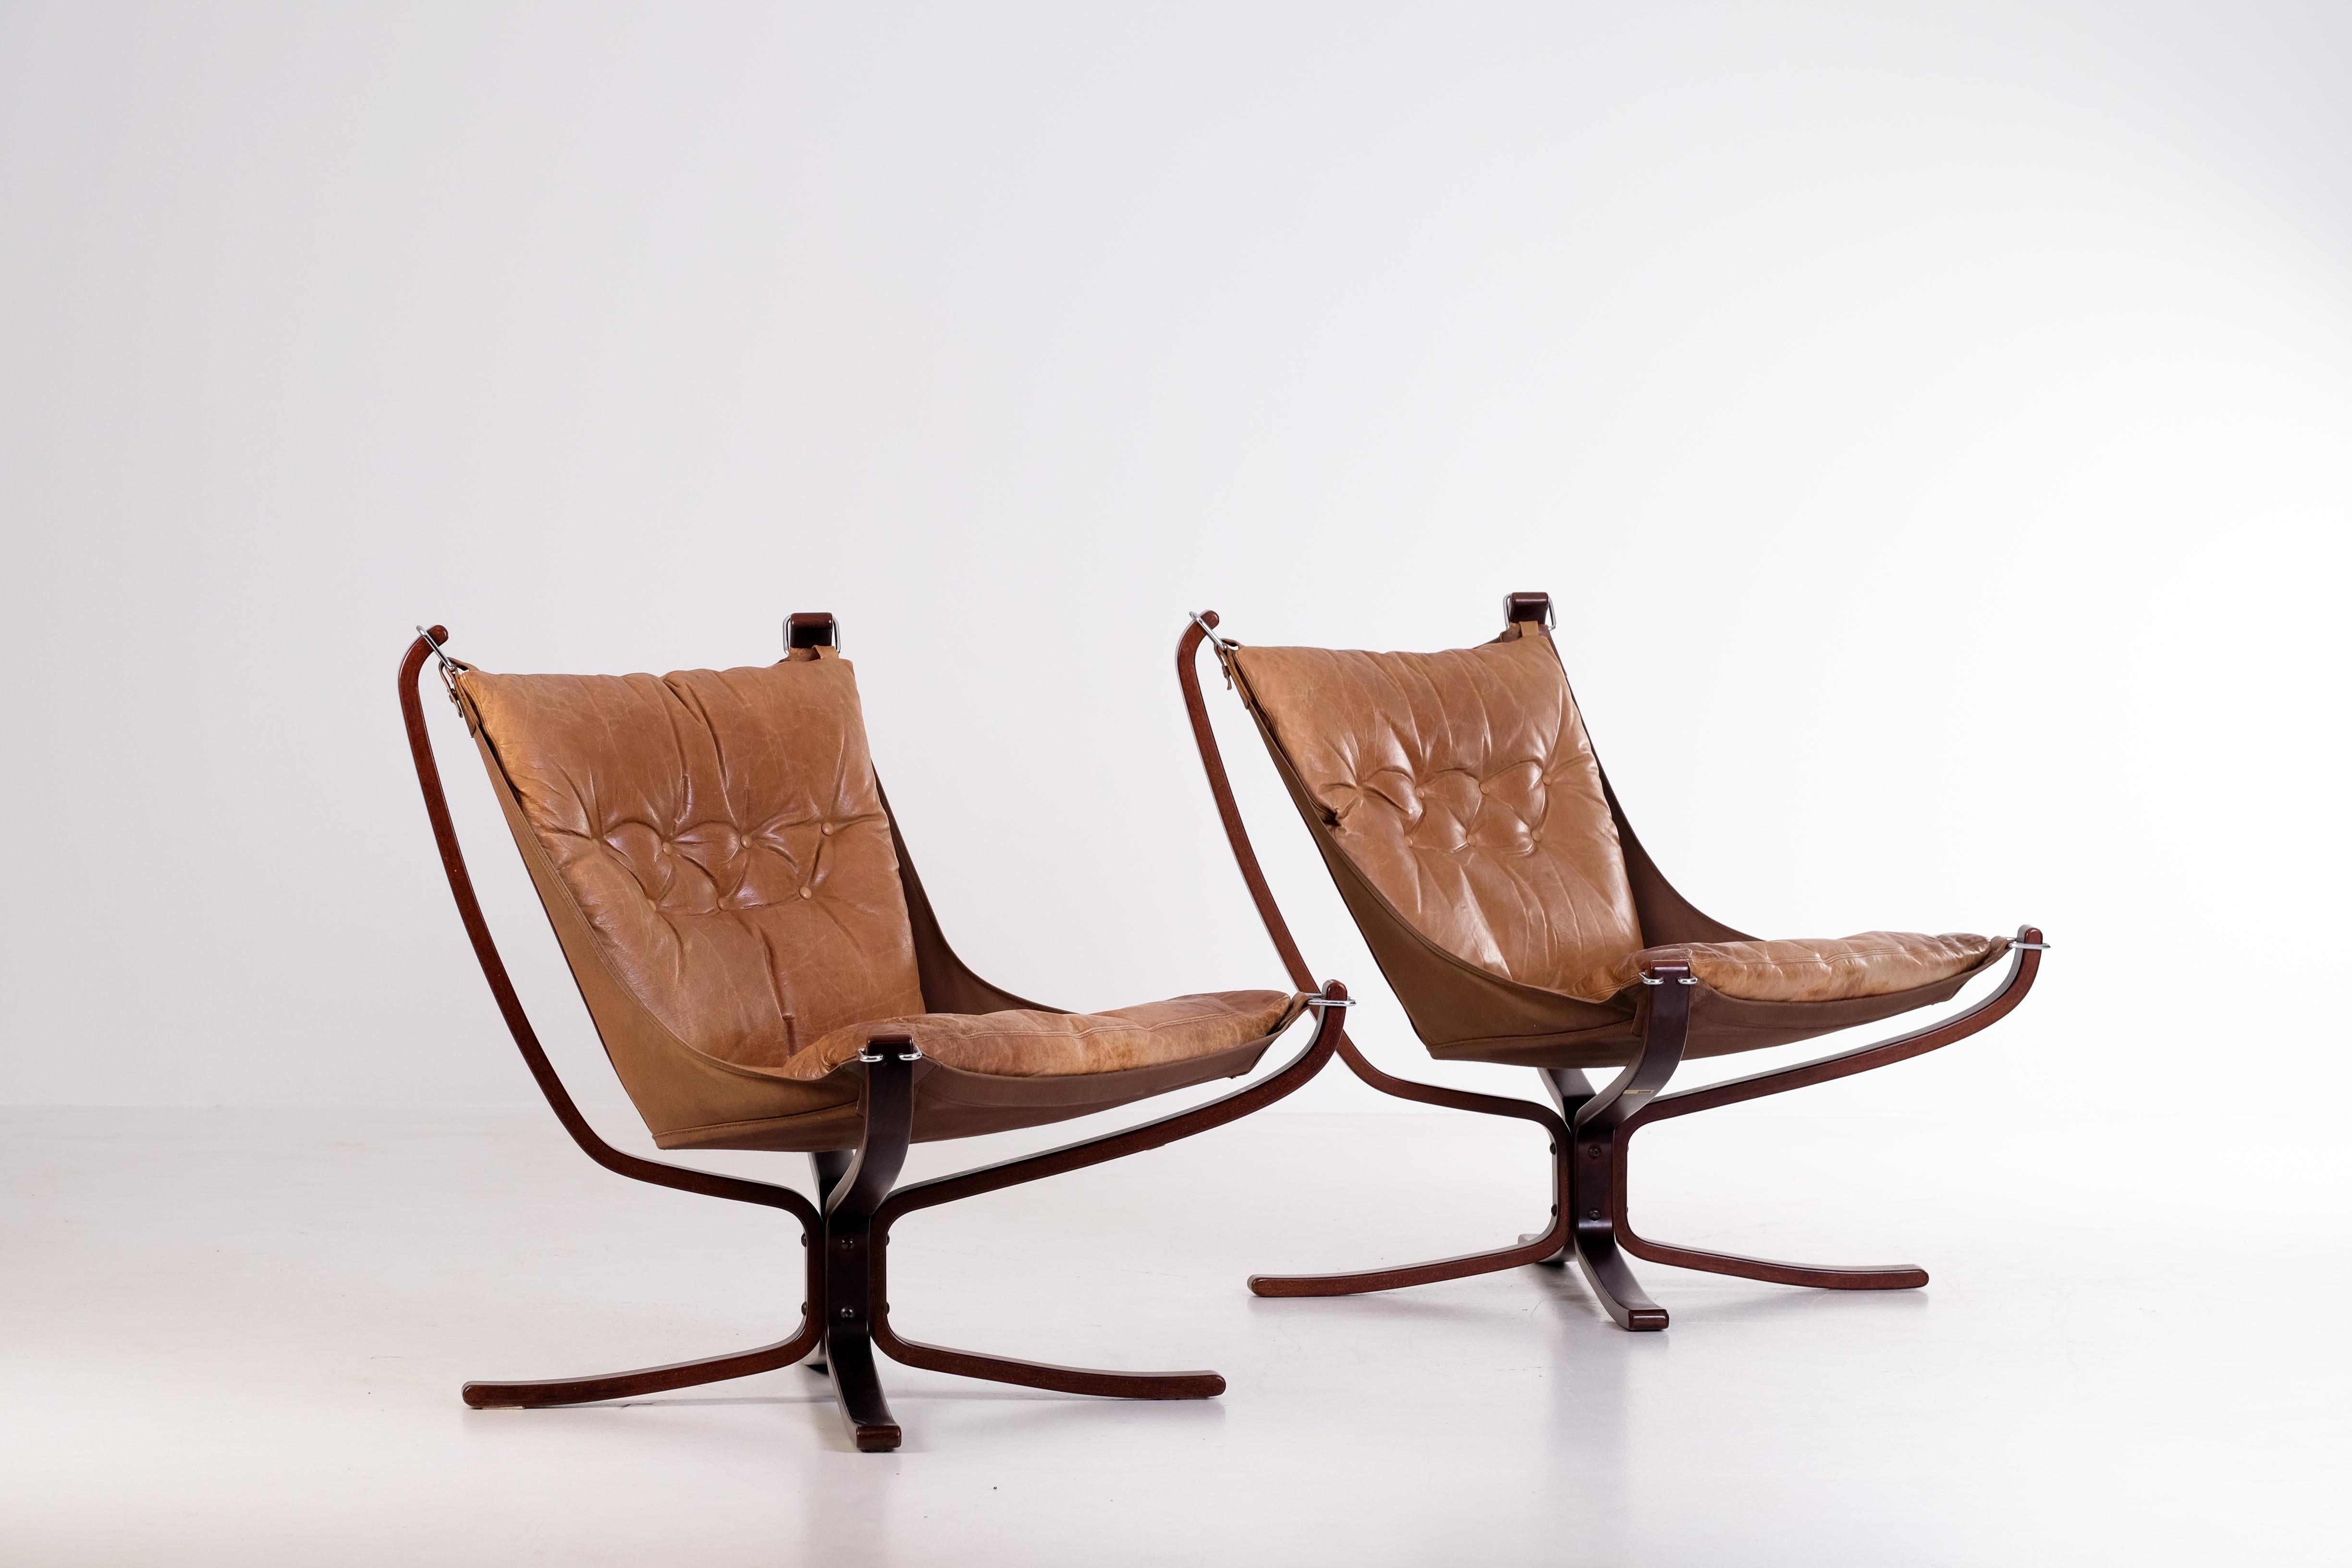 Norwegische Falcon-Stühle aus braunem Leder von Sigurd Ressel, Norwegen, 1970er Jahre. 
Guter Vintage-Zustand mit Gebrauchsspuren und Patina.
Bitte beachten Sie: Pauschalversand weltweit möglich: €1000

